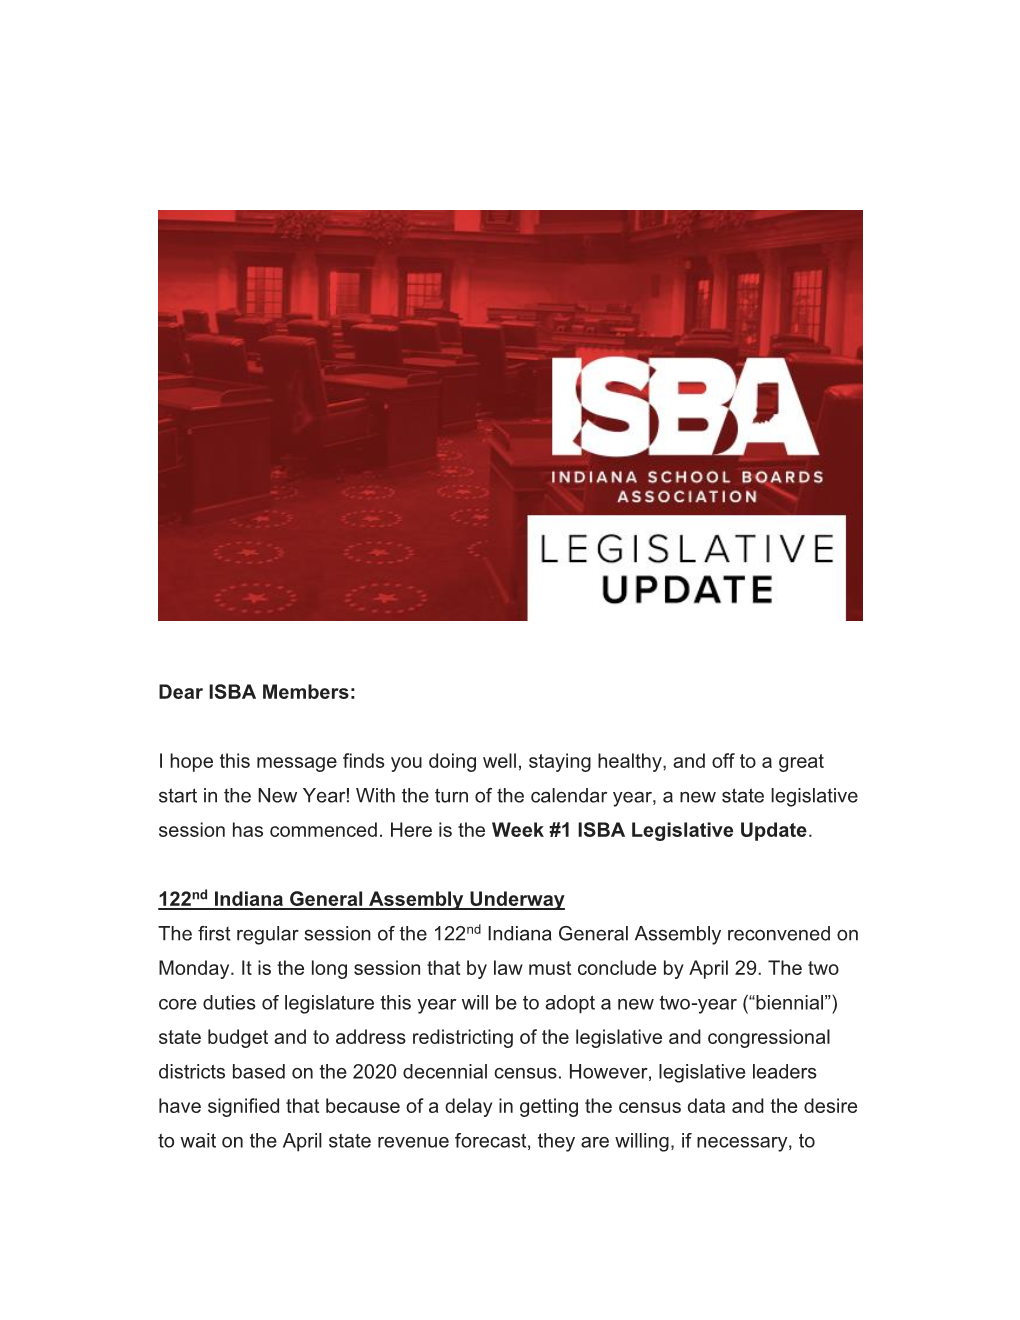 Week #1 ISBA Legislative Update